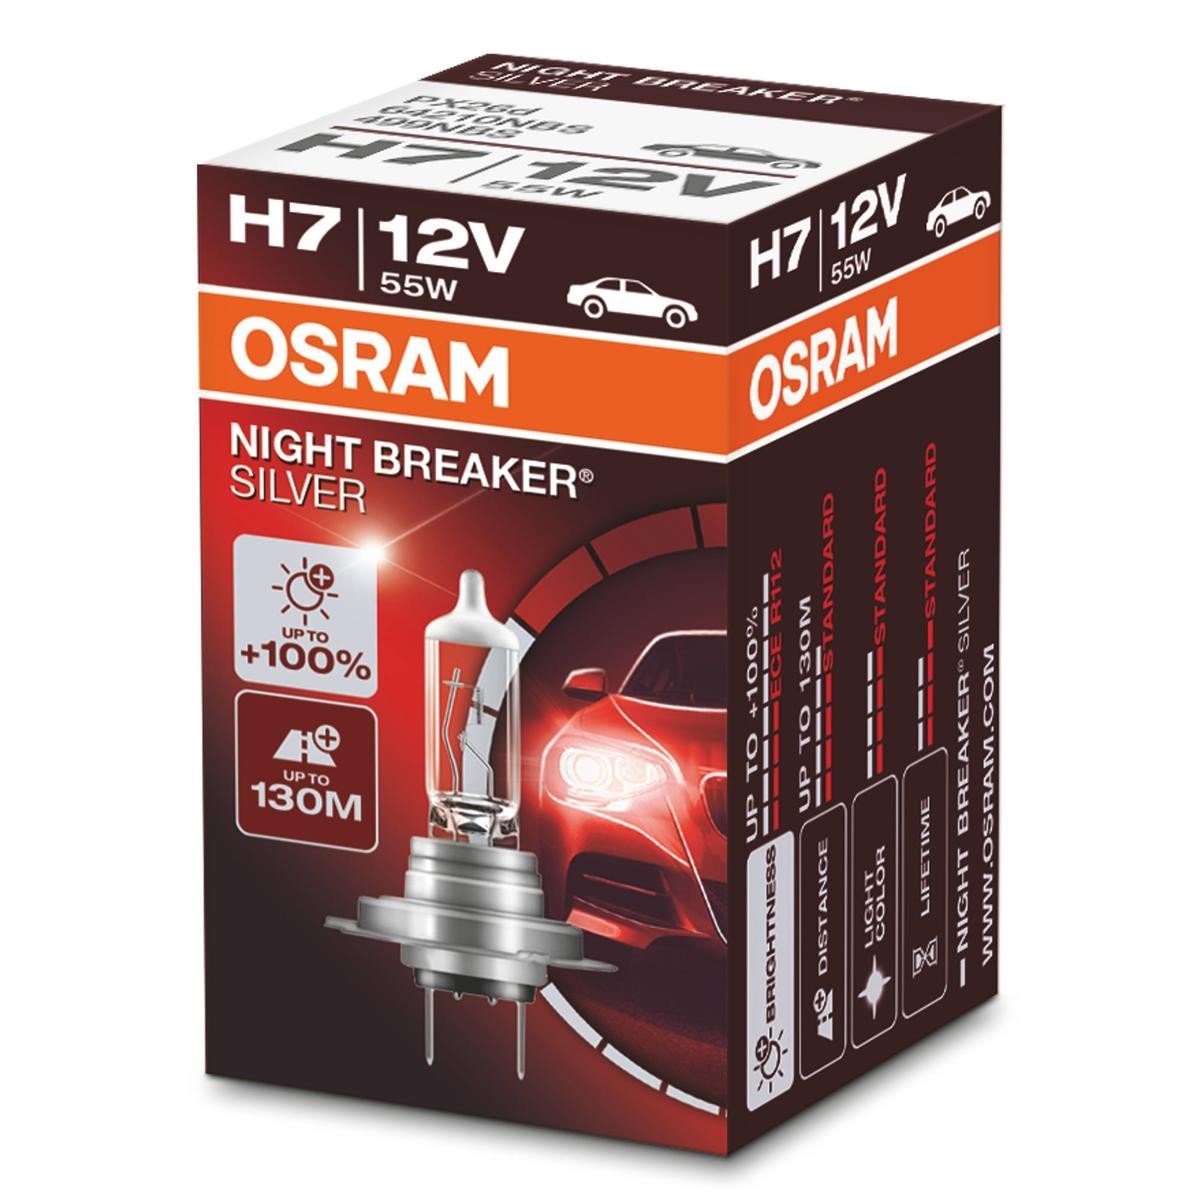 64210NBS OSRAM NIGHT BREAKER SILVER H7 12V 55W PX26d, 4300K, Halogen Bulb,  spotlight